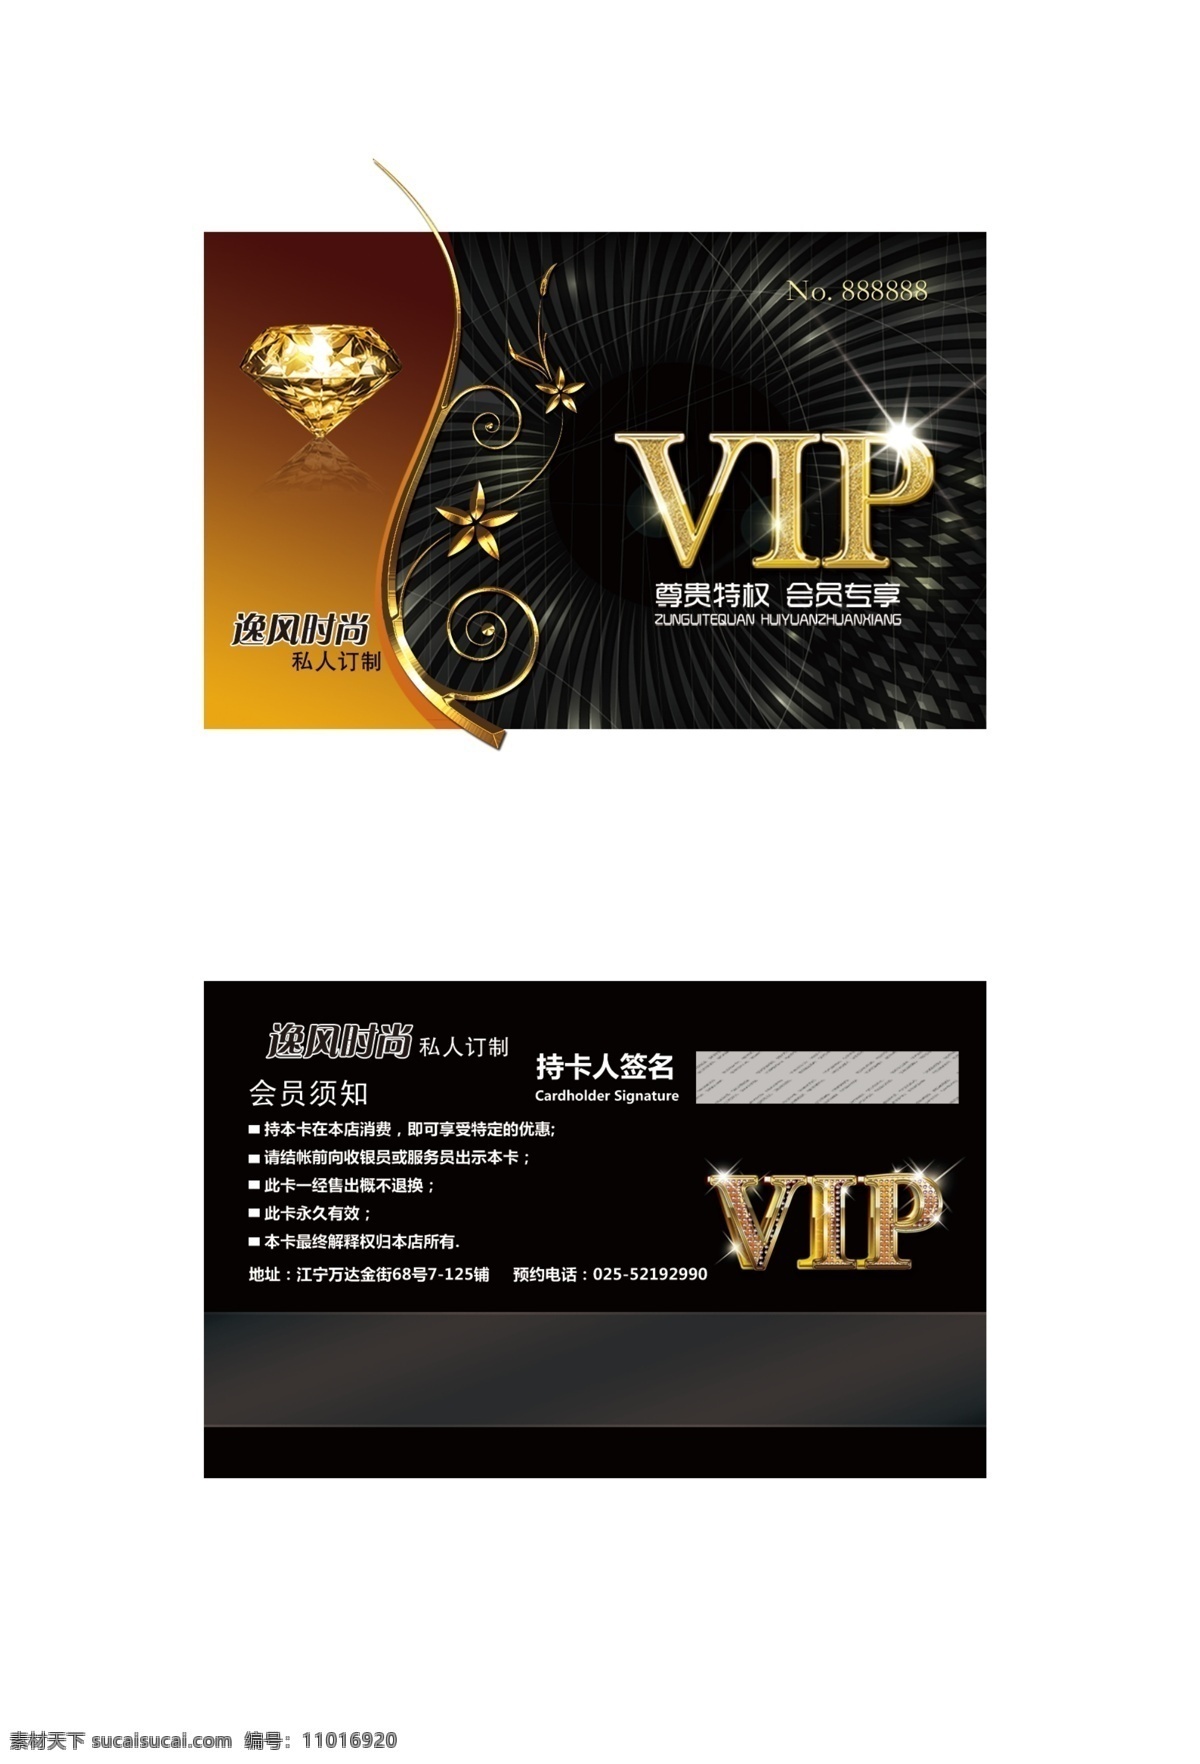 会员卡 vip 卡 黑色 钻石 vip卡 钻石卡 黄色 背景 反面 正面 立体字 艺术字 名片 名片卡片